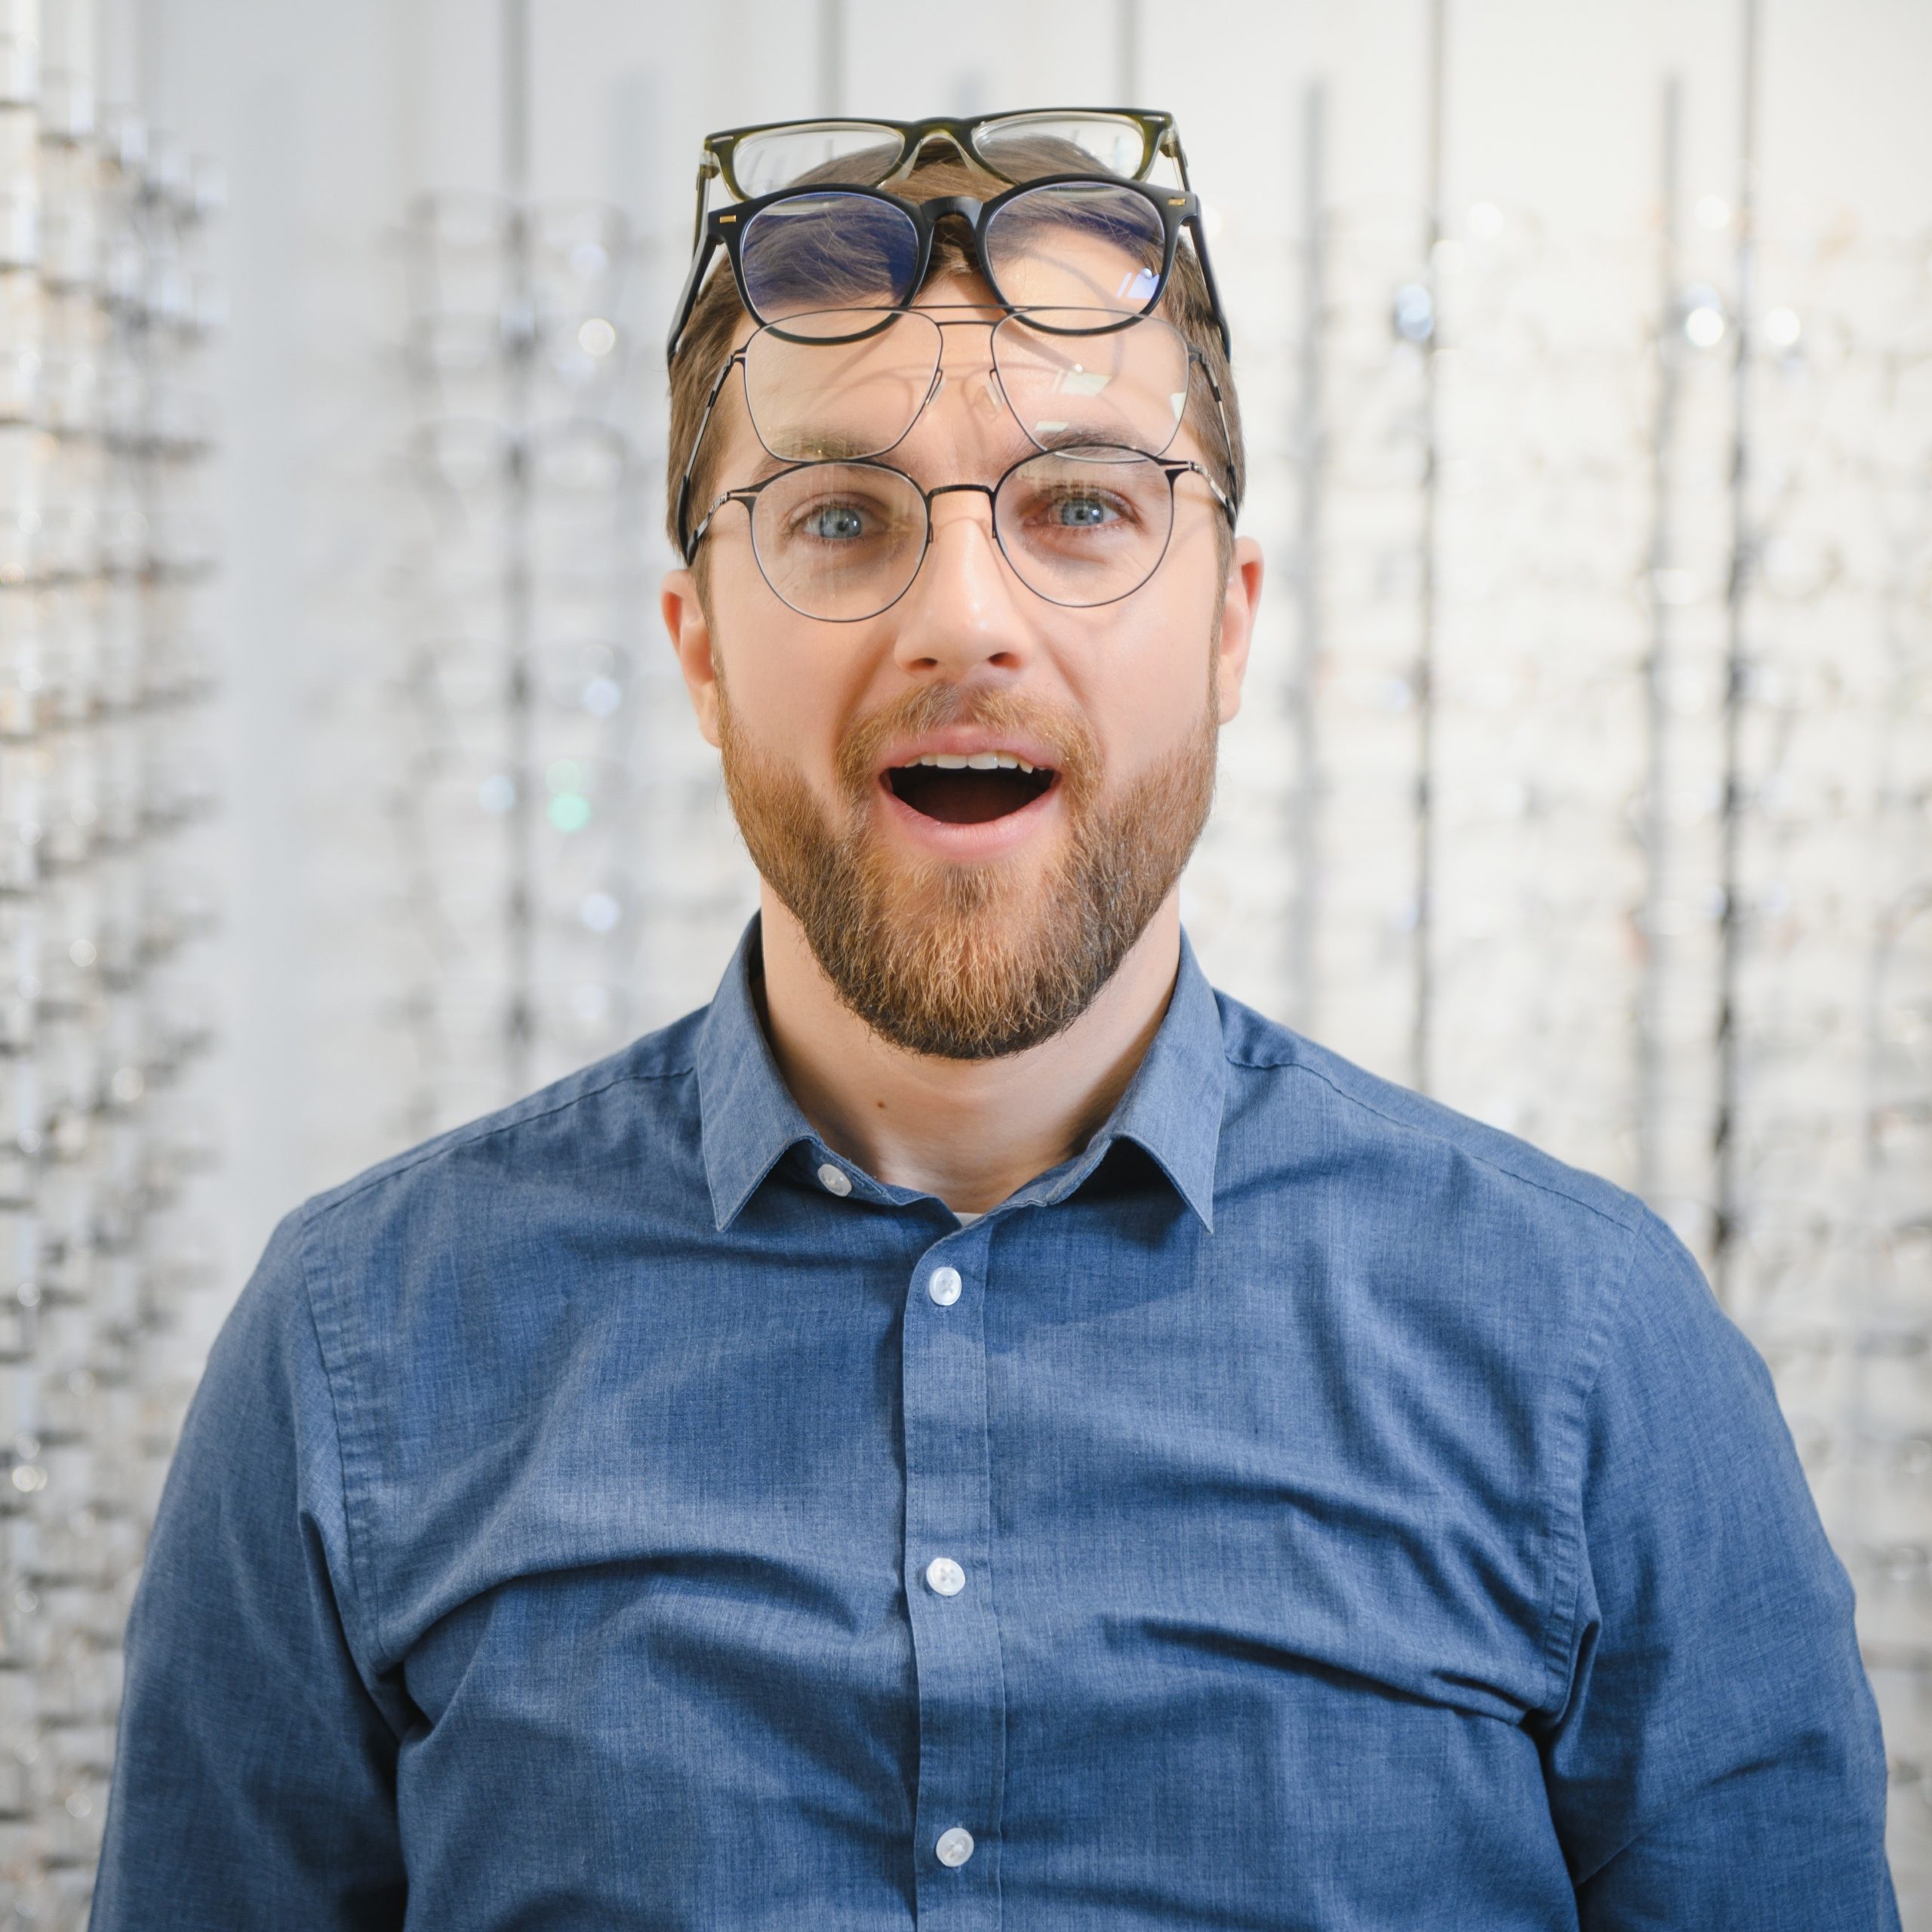 Man wearing multiple eyeglasses